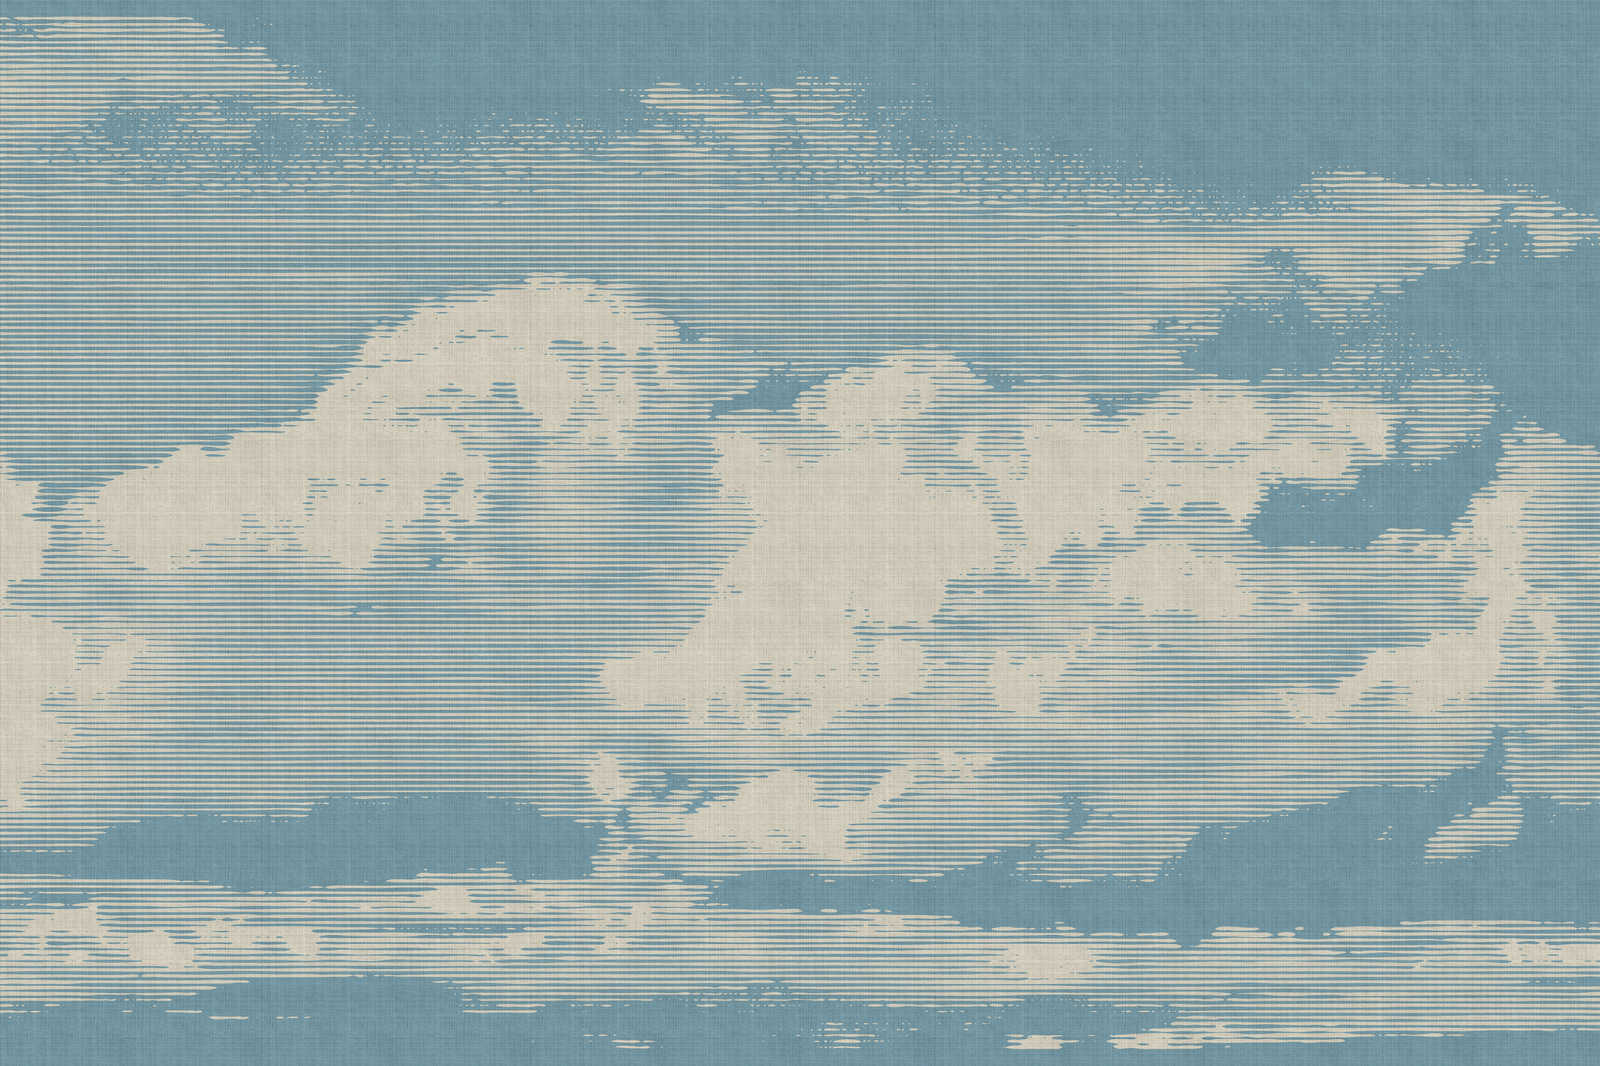             Clouds 1 - Hemelse canvasfoto met wolkenmotief in natuurlijke linnenlook - 0,90 m x 0,60 m
        